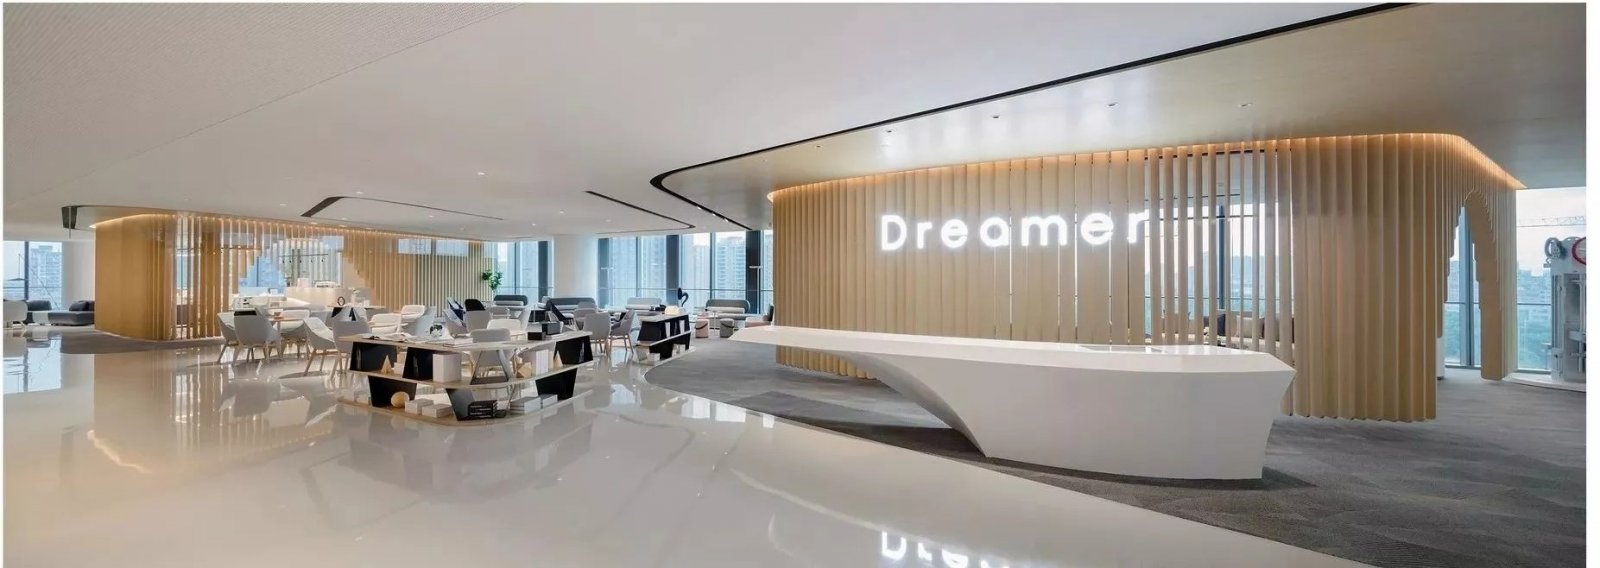 梦想发动机——现代简约风办公空间设计  置美优合-6